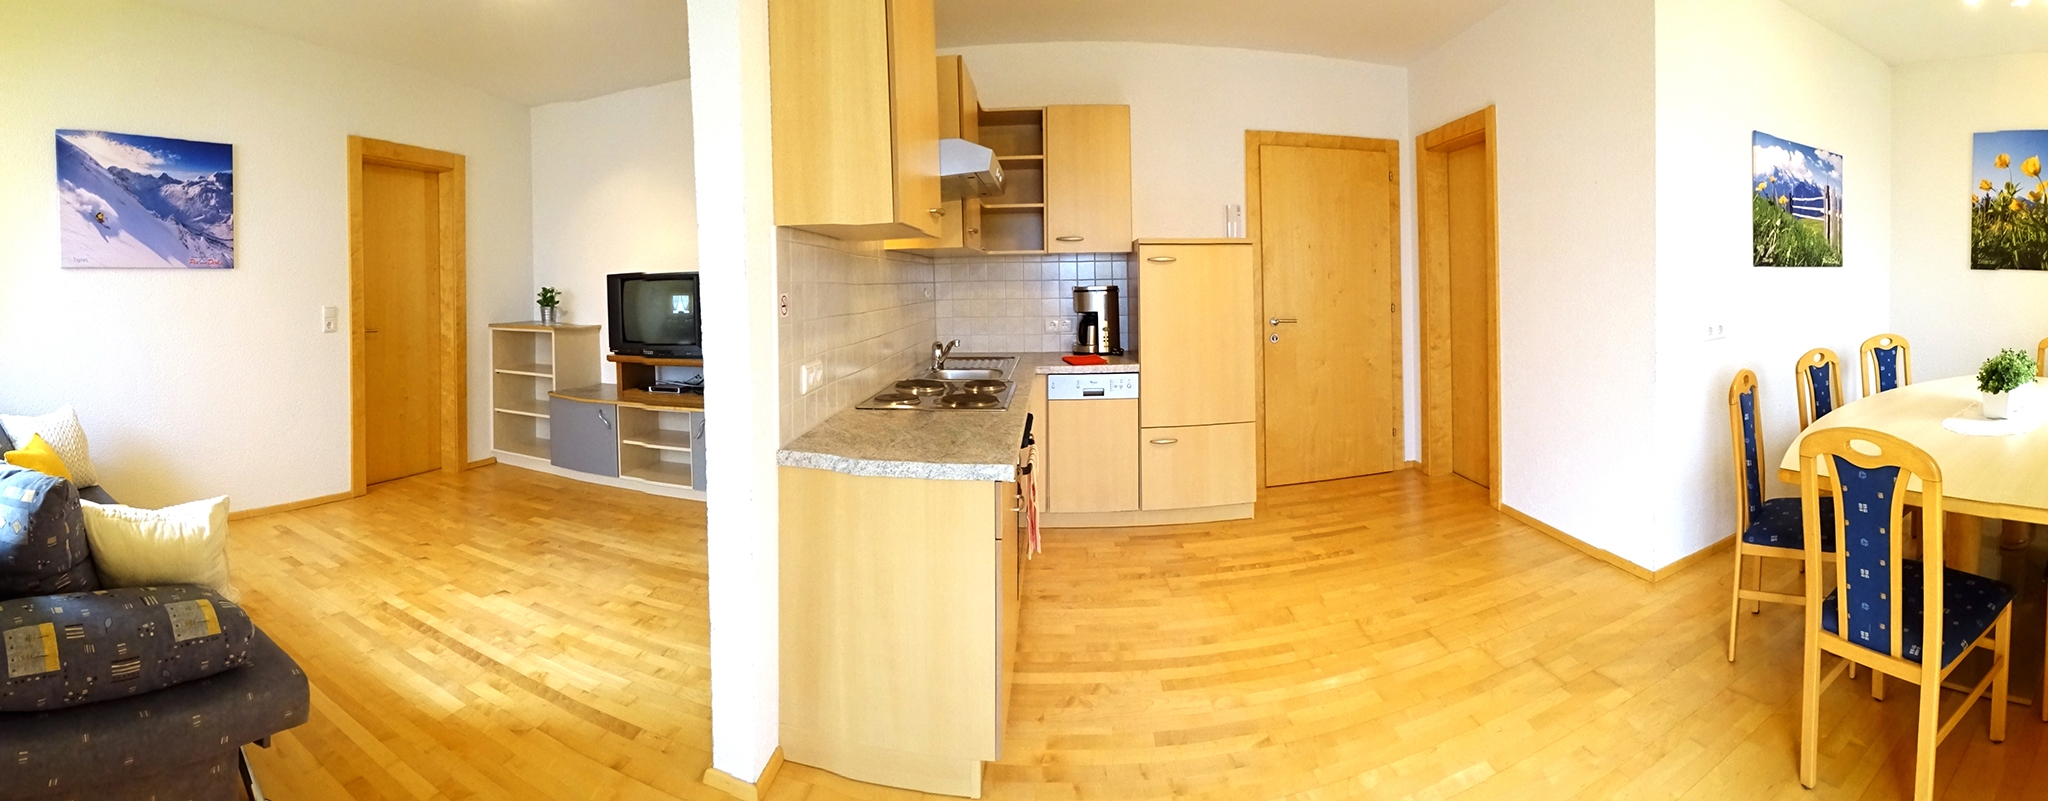 Appartementhaus Alpenjuwel: Komfort-Ferienwohnung für 5 Personen - Wohnbereich und Küchenzeile